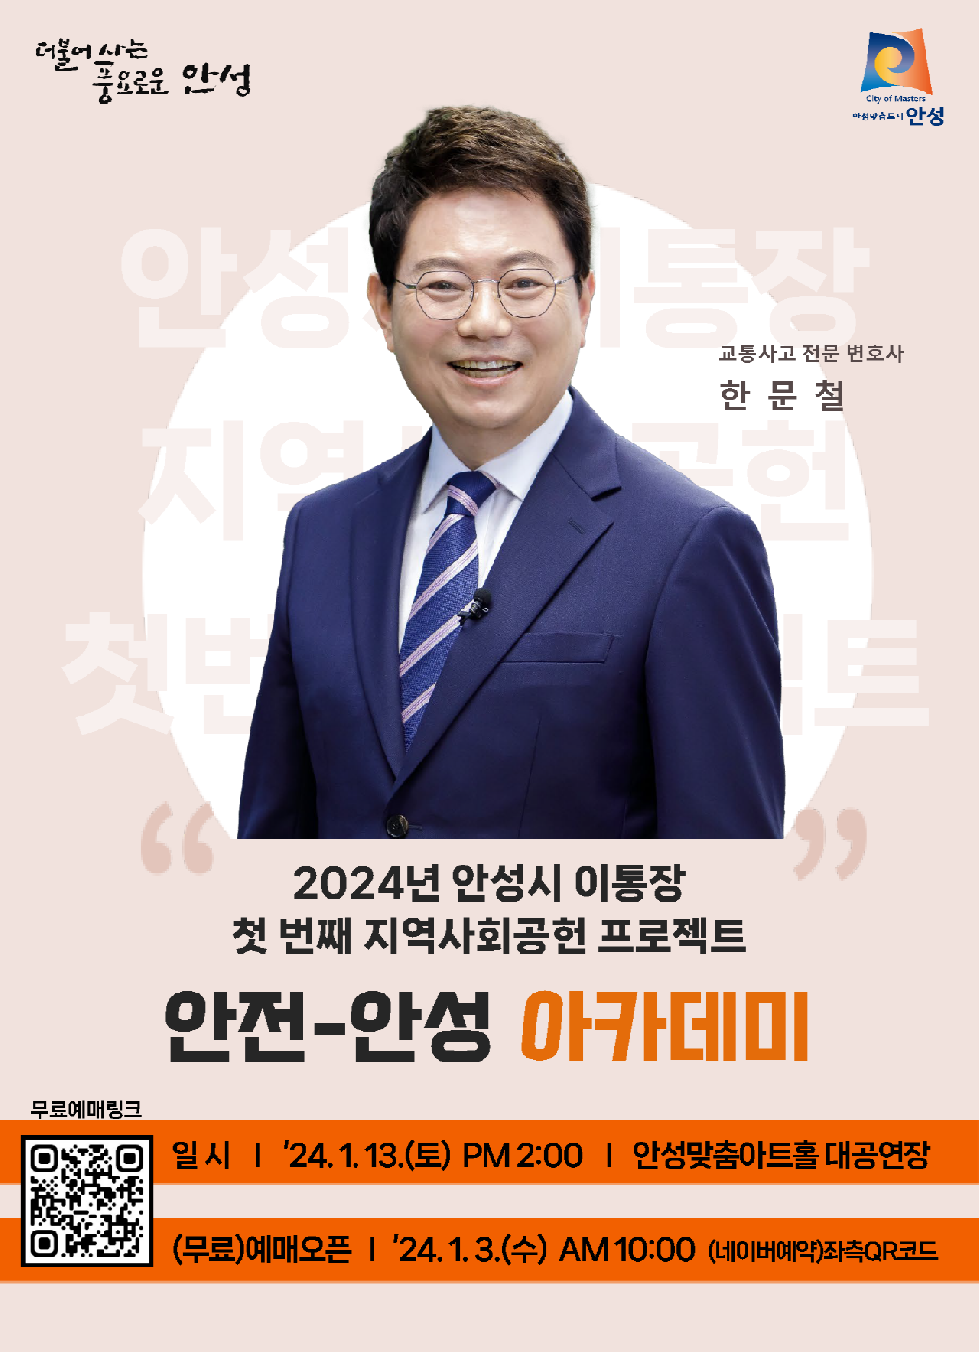 안성시, 1월 13일 한문철 변호사 초청강연